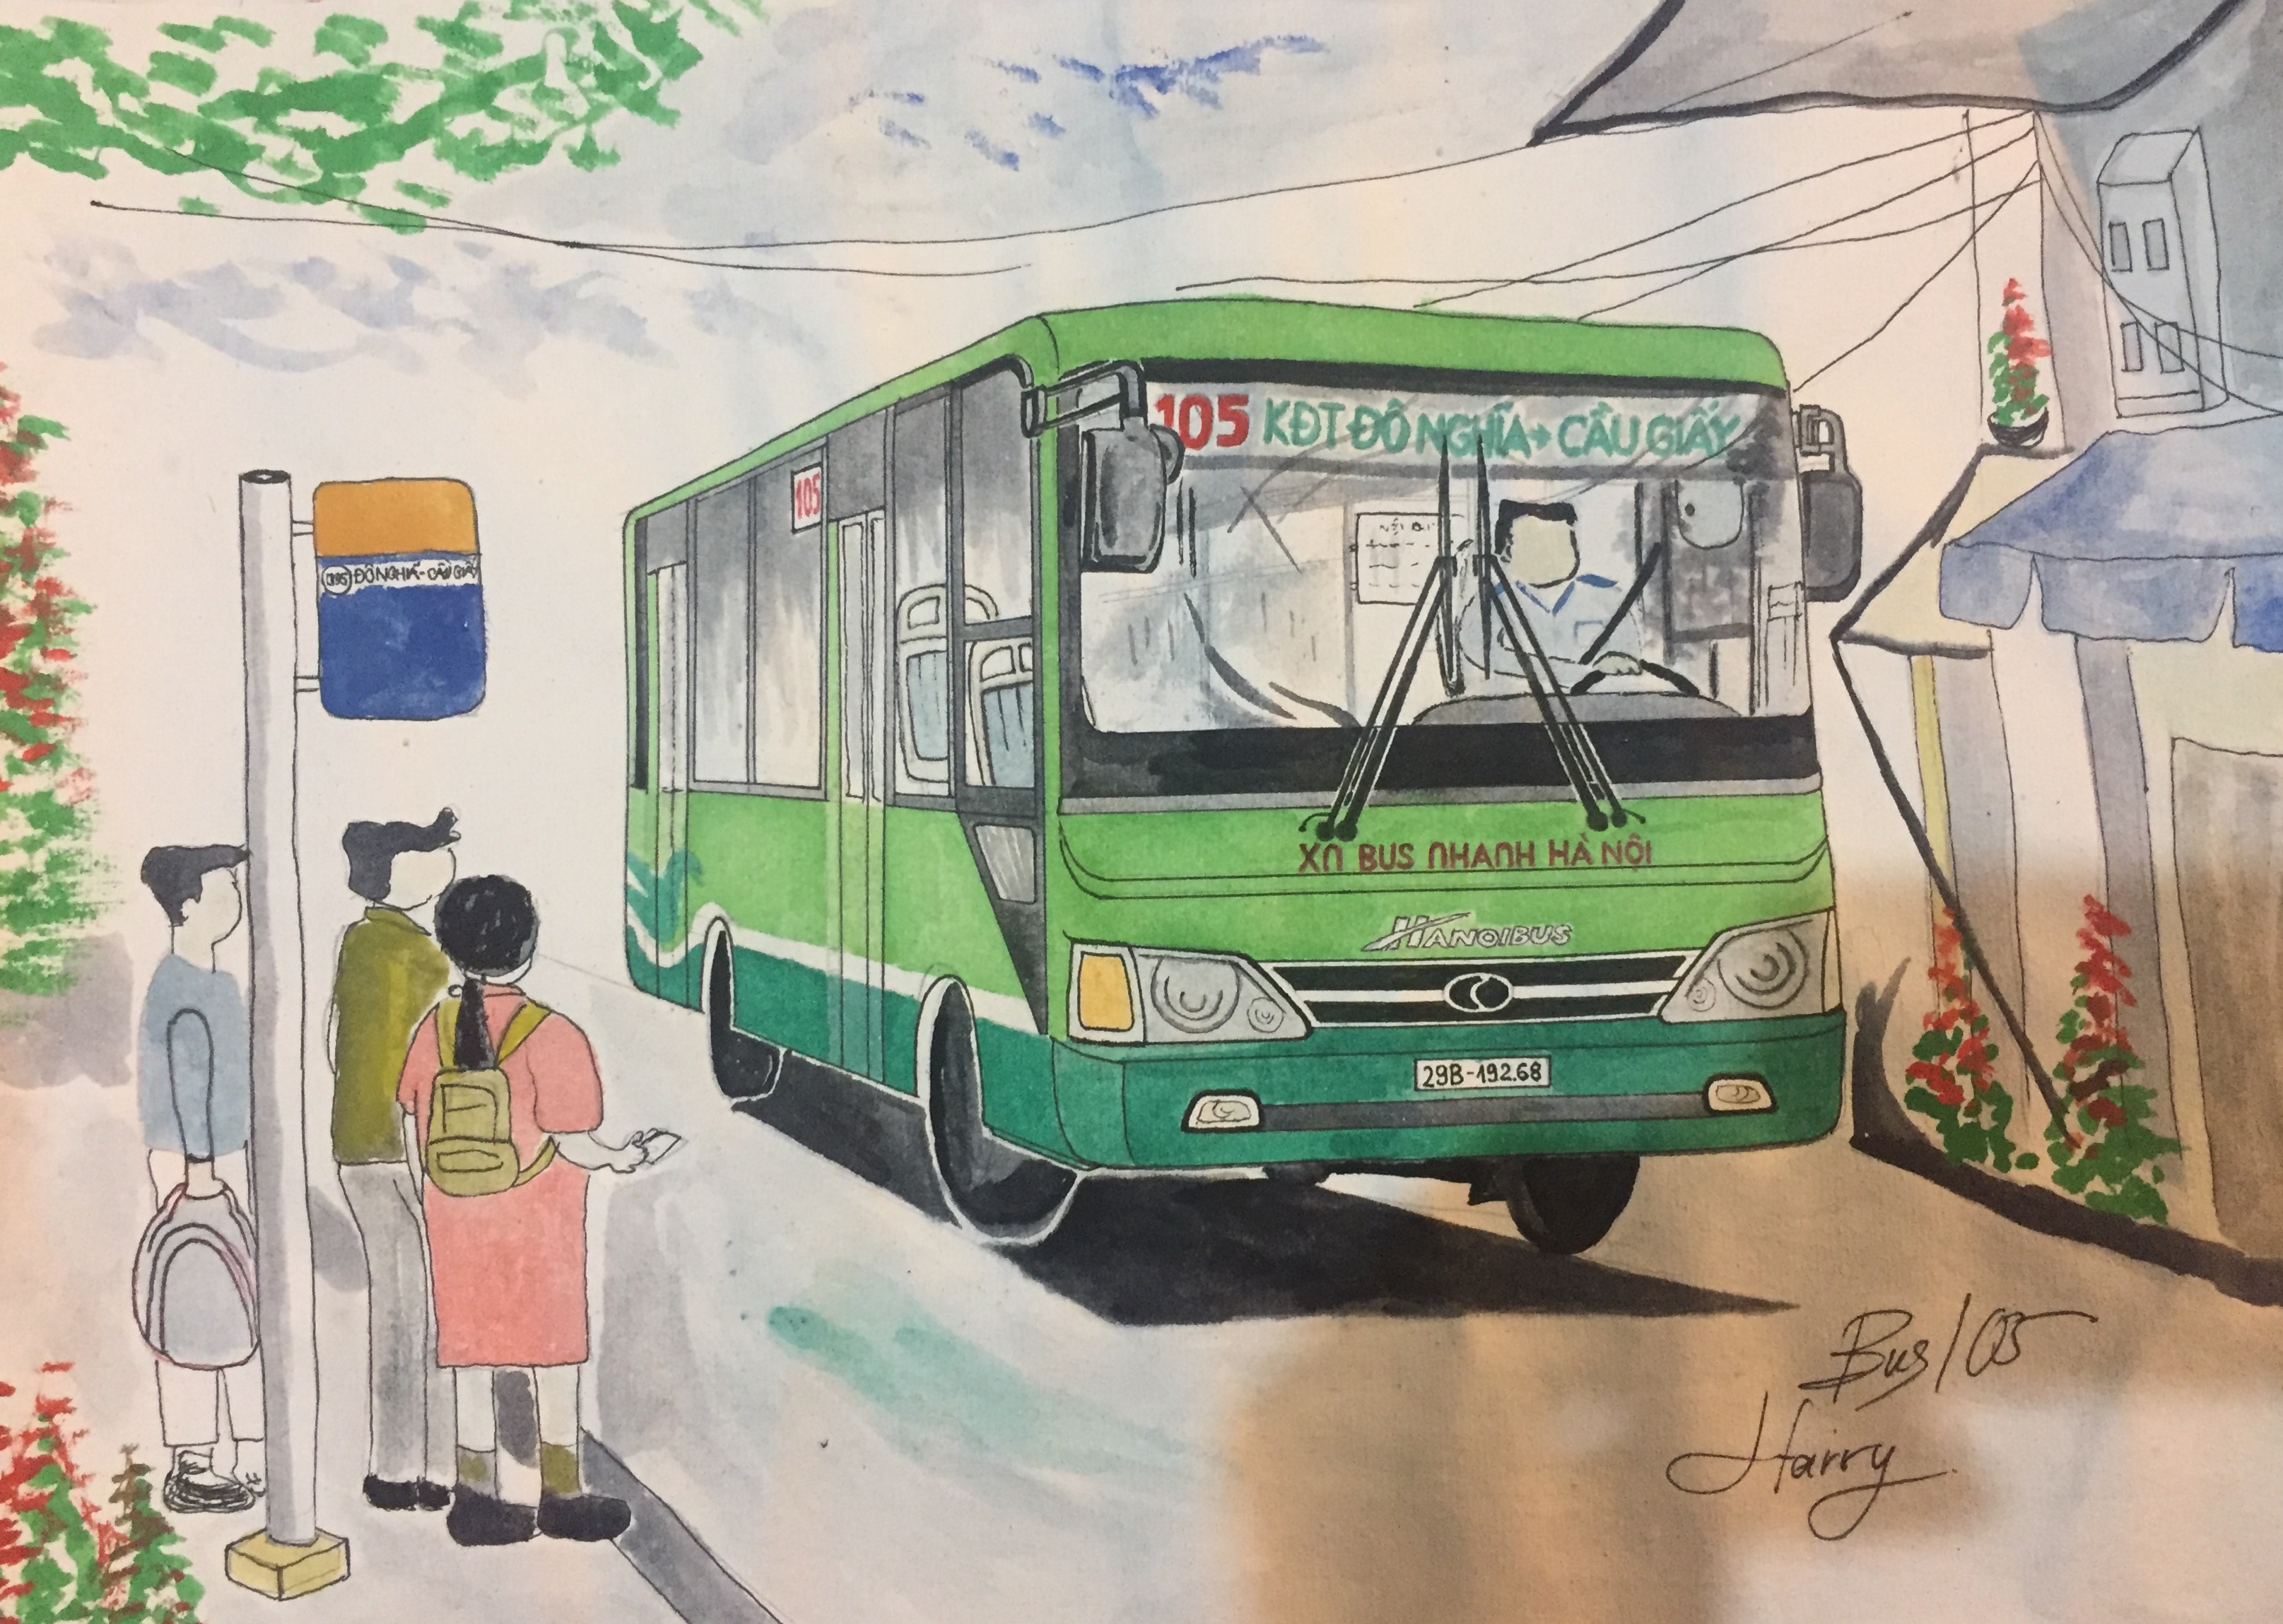 Xe buýt Hà Nội là biểu tượng không thể thiếu trong cuộc sống và văn hóa đô thị của thủ đô nghìn năm văn hiến. Hãy cùng ngắm nhìn một bức tranh vẽ xe buýt Hà Nội đầy tình cảm và sáng tạo, để khám phá thêm vẻ đẹp của thành phố này.